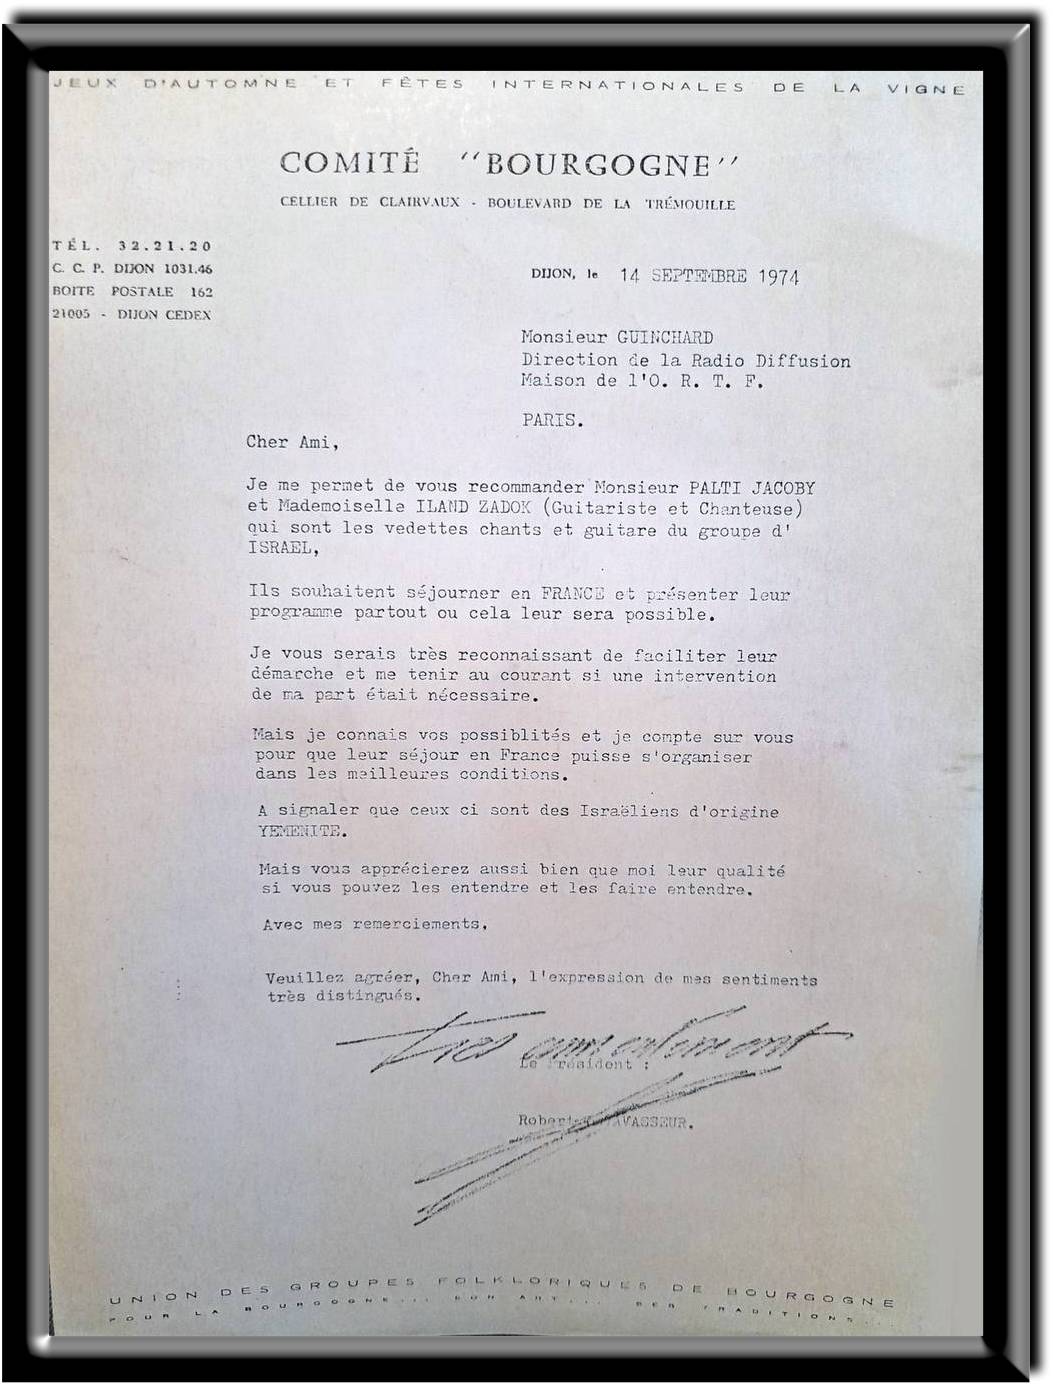 Letter of recommendation by Robert Levavasseur, the president of the Festival in Dijon, September, 1974.